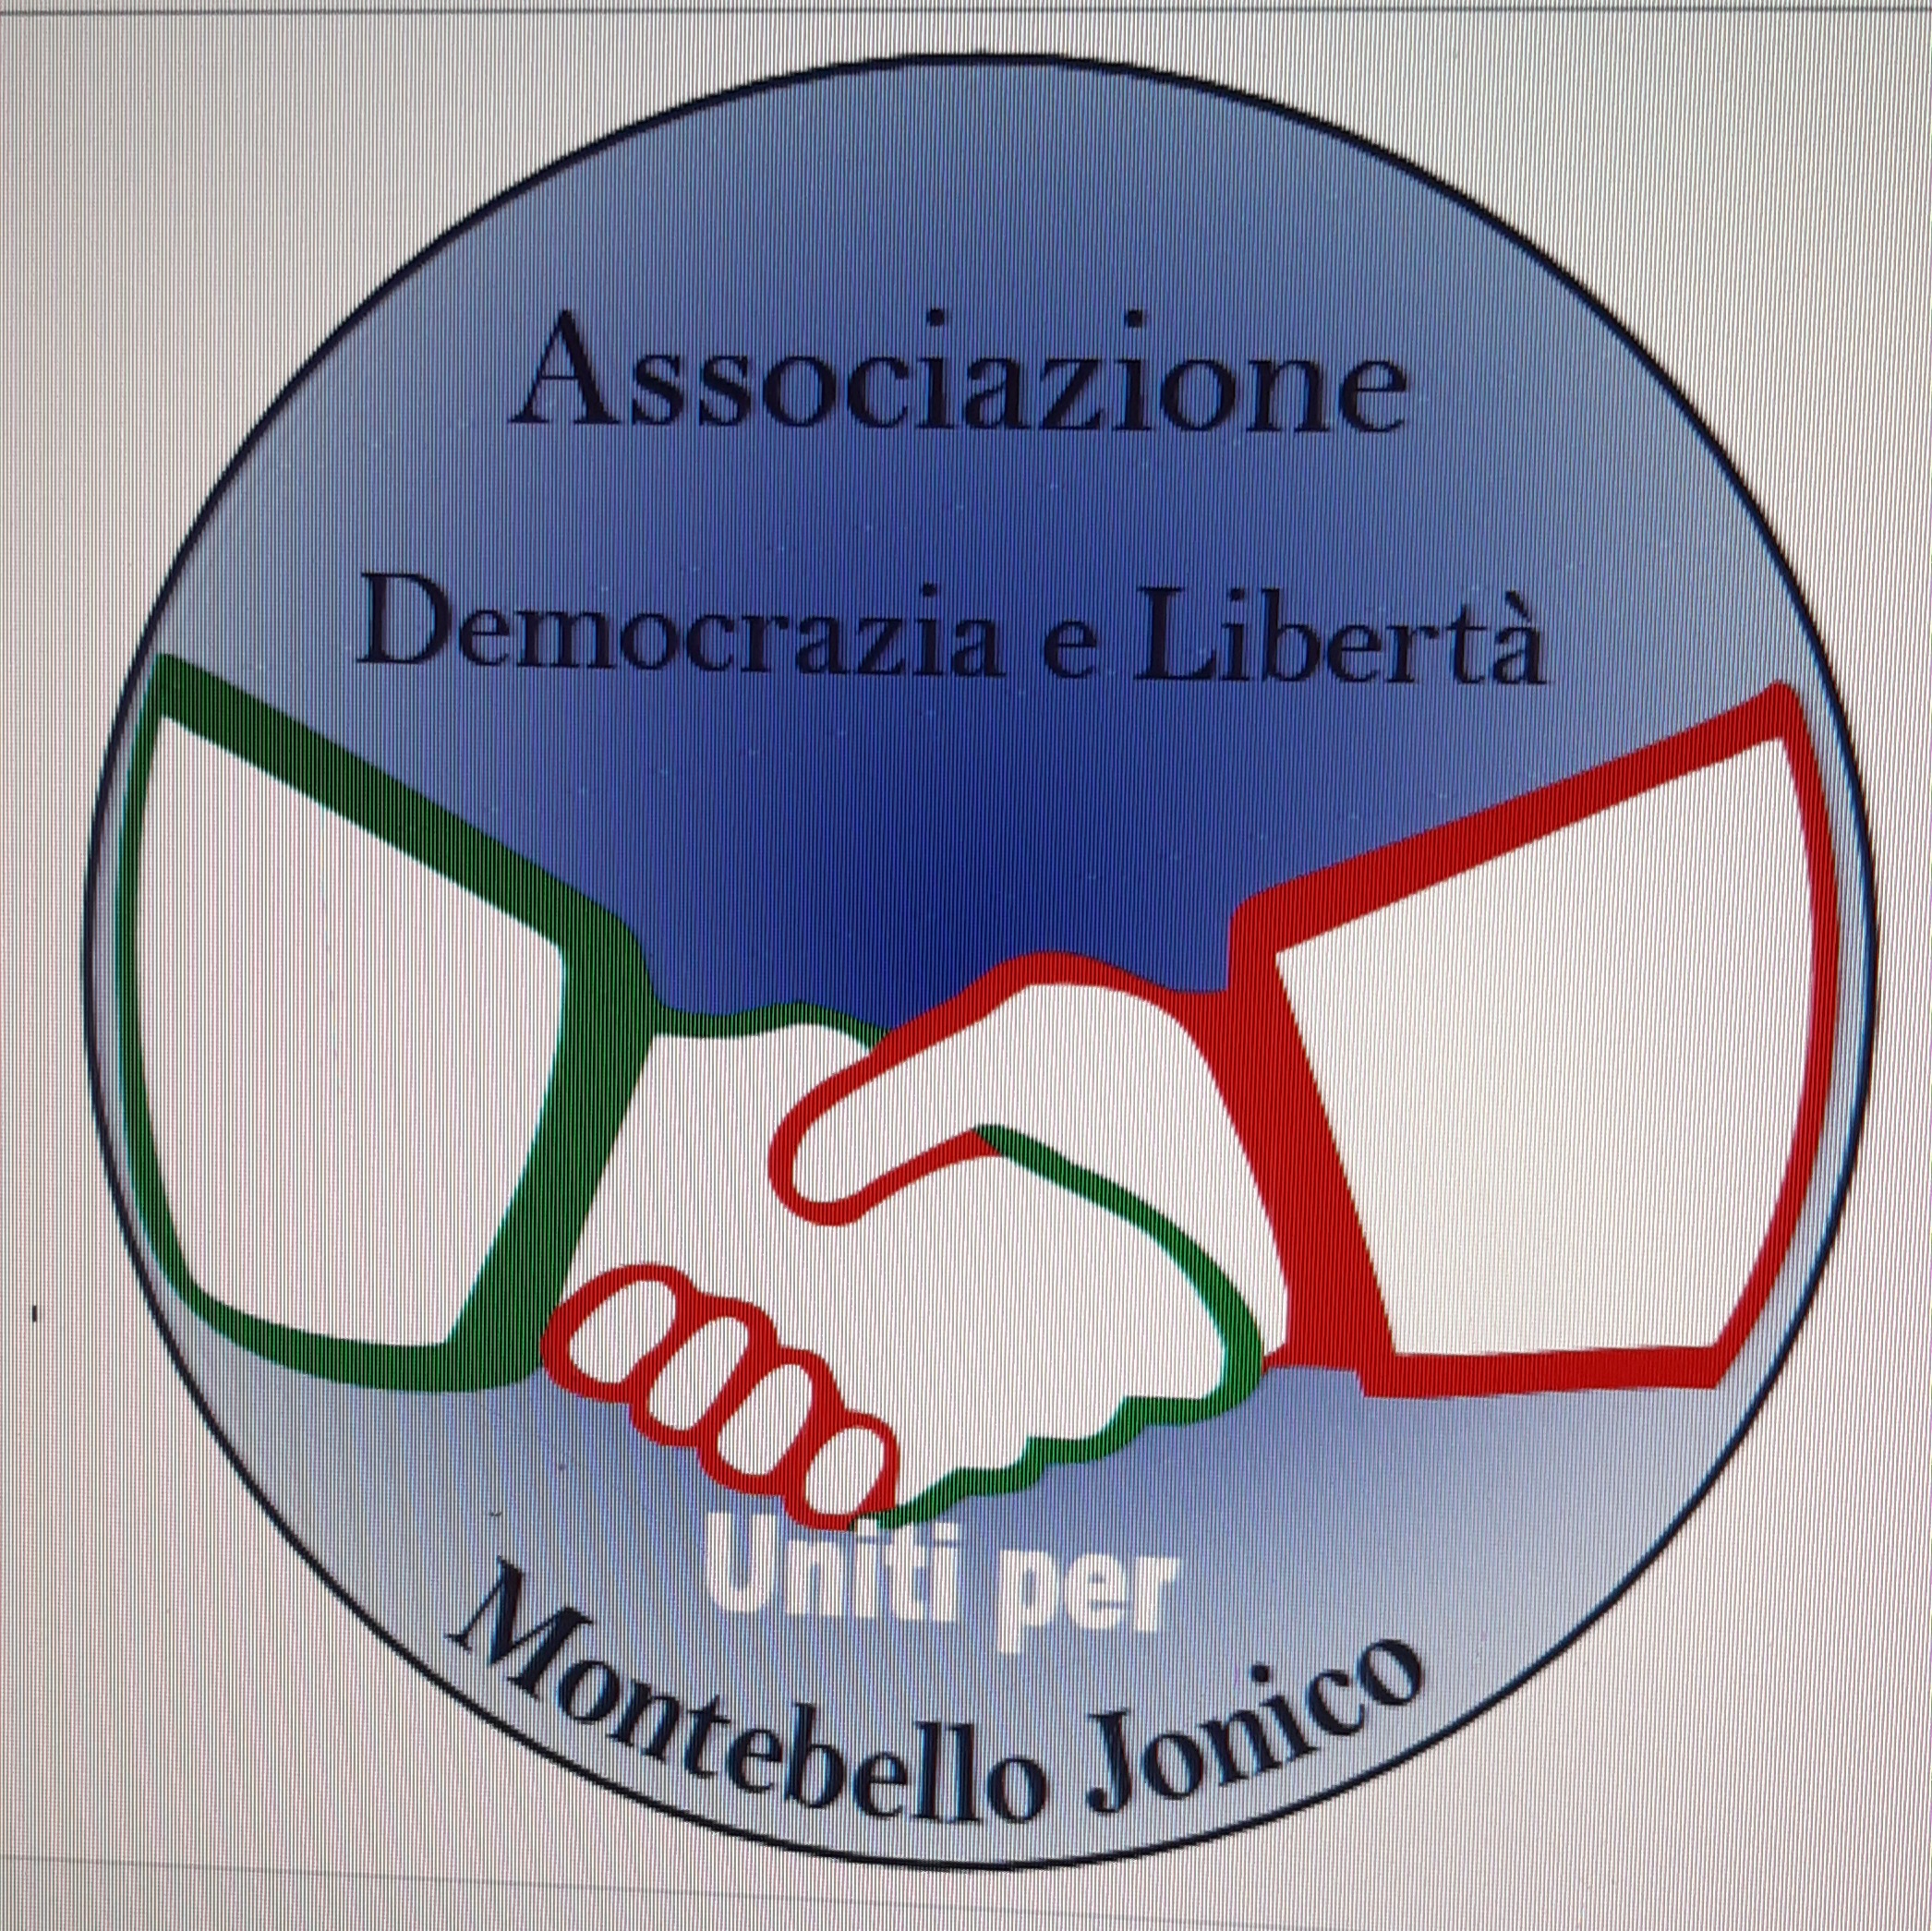 Associazione Democrazia e Libertà - Uniti per Montebello Jonico